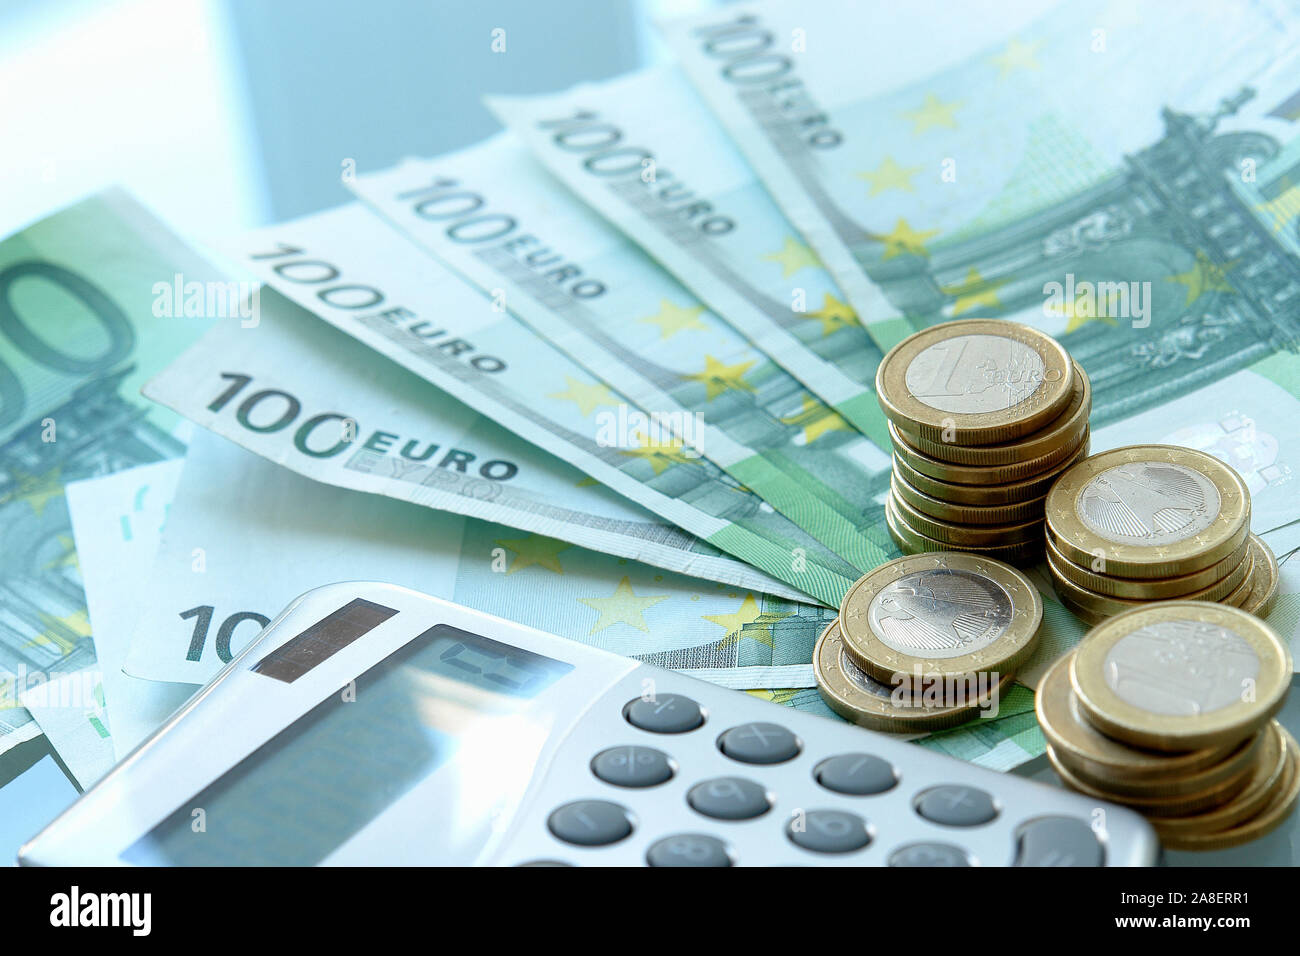 Taschenrechner und Euro, Stock Photo